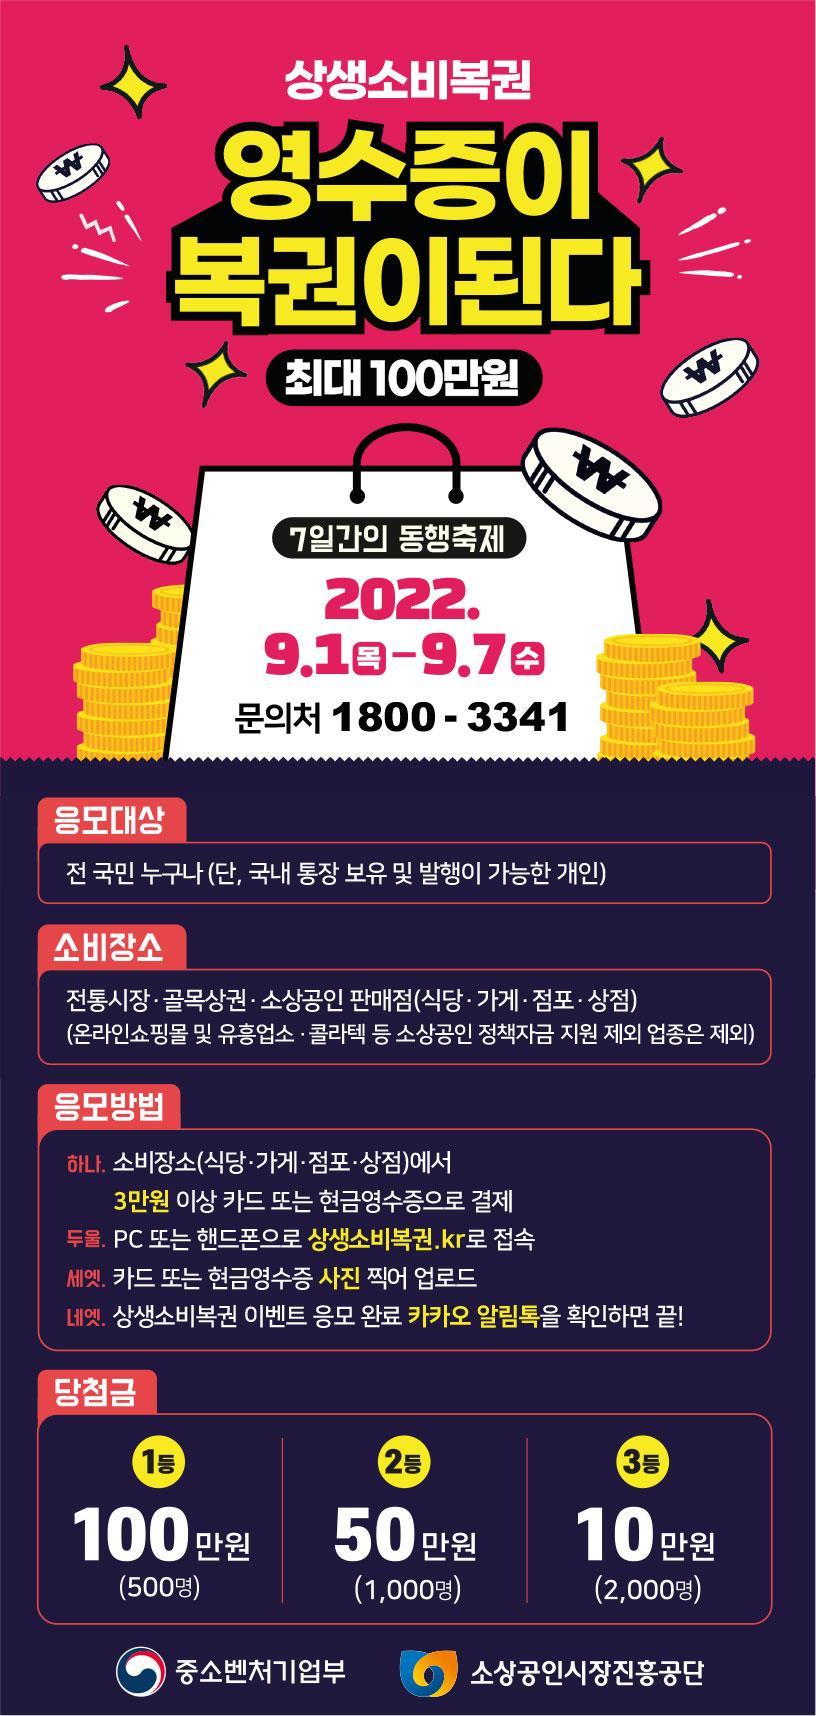 카드형 온누리상품권 출시… 소상공인 영수증 복권 행사도 | 서울신문